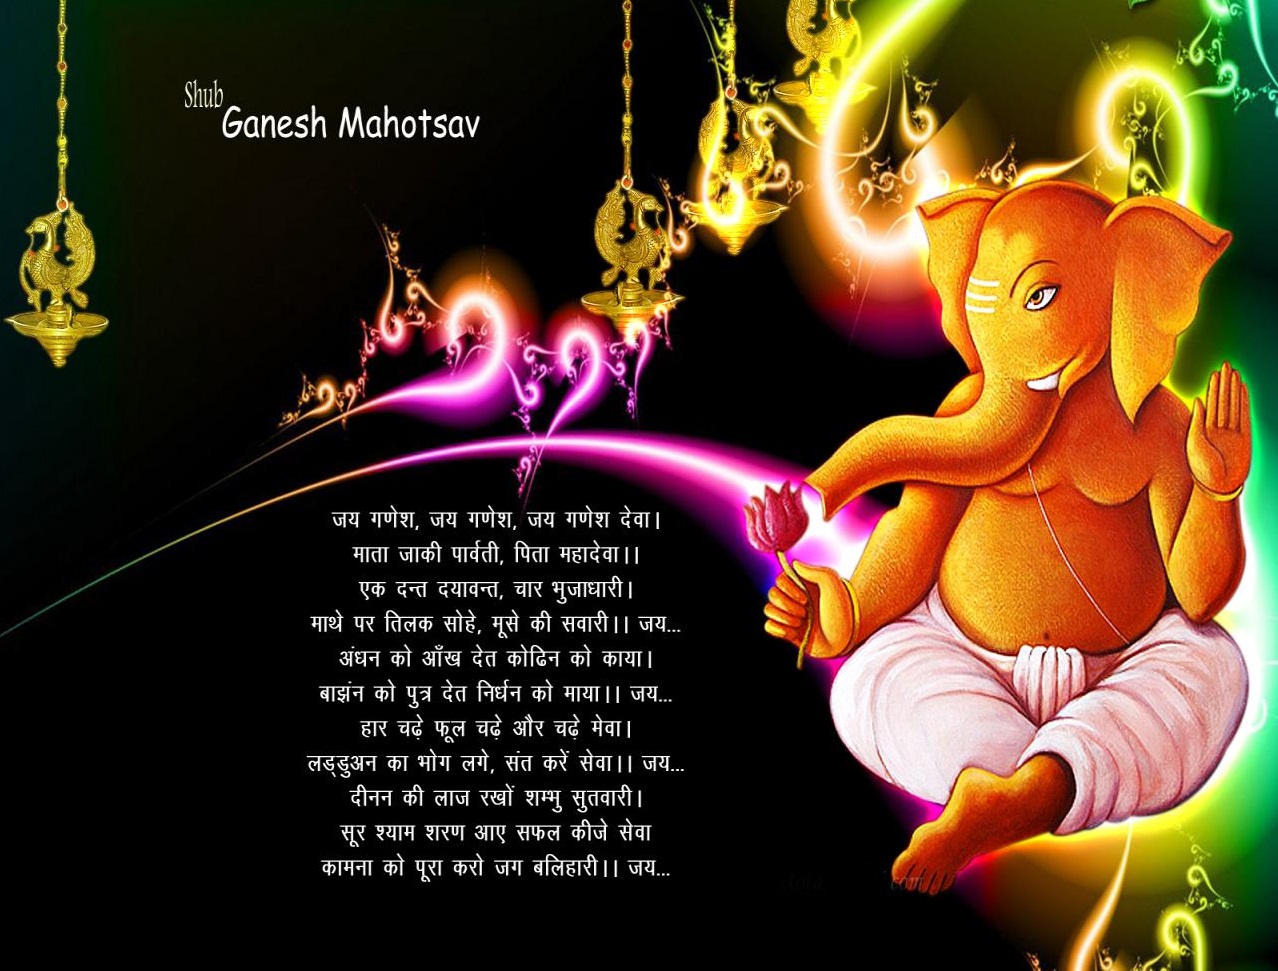 Happy Ganesh Chaturthi Quotes In English Hindi Marathi Vinayaka Chaturthi 2015 Loksatta.com covers marathi news from india and maharashtra. allindiaroundup